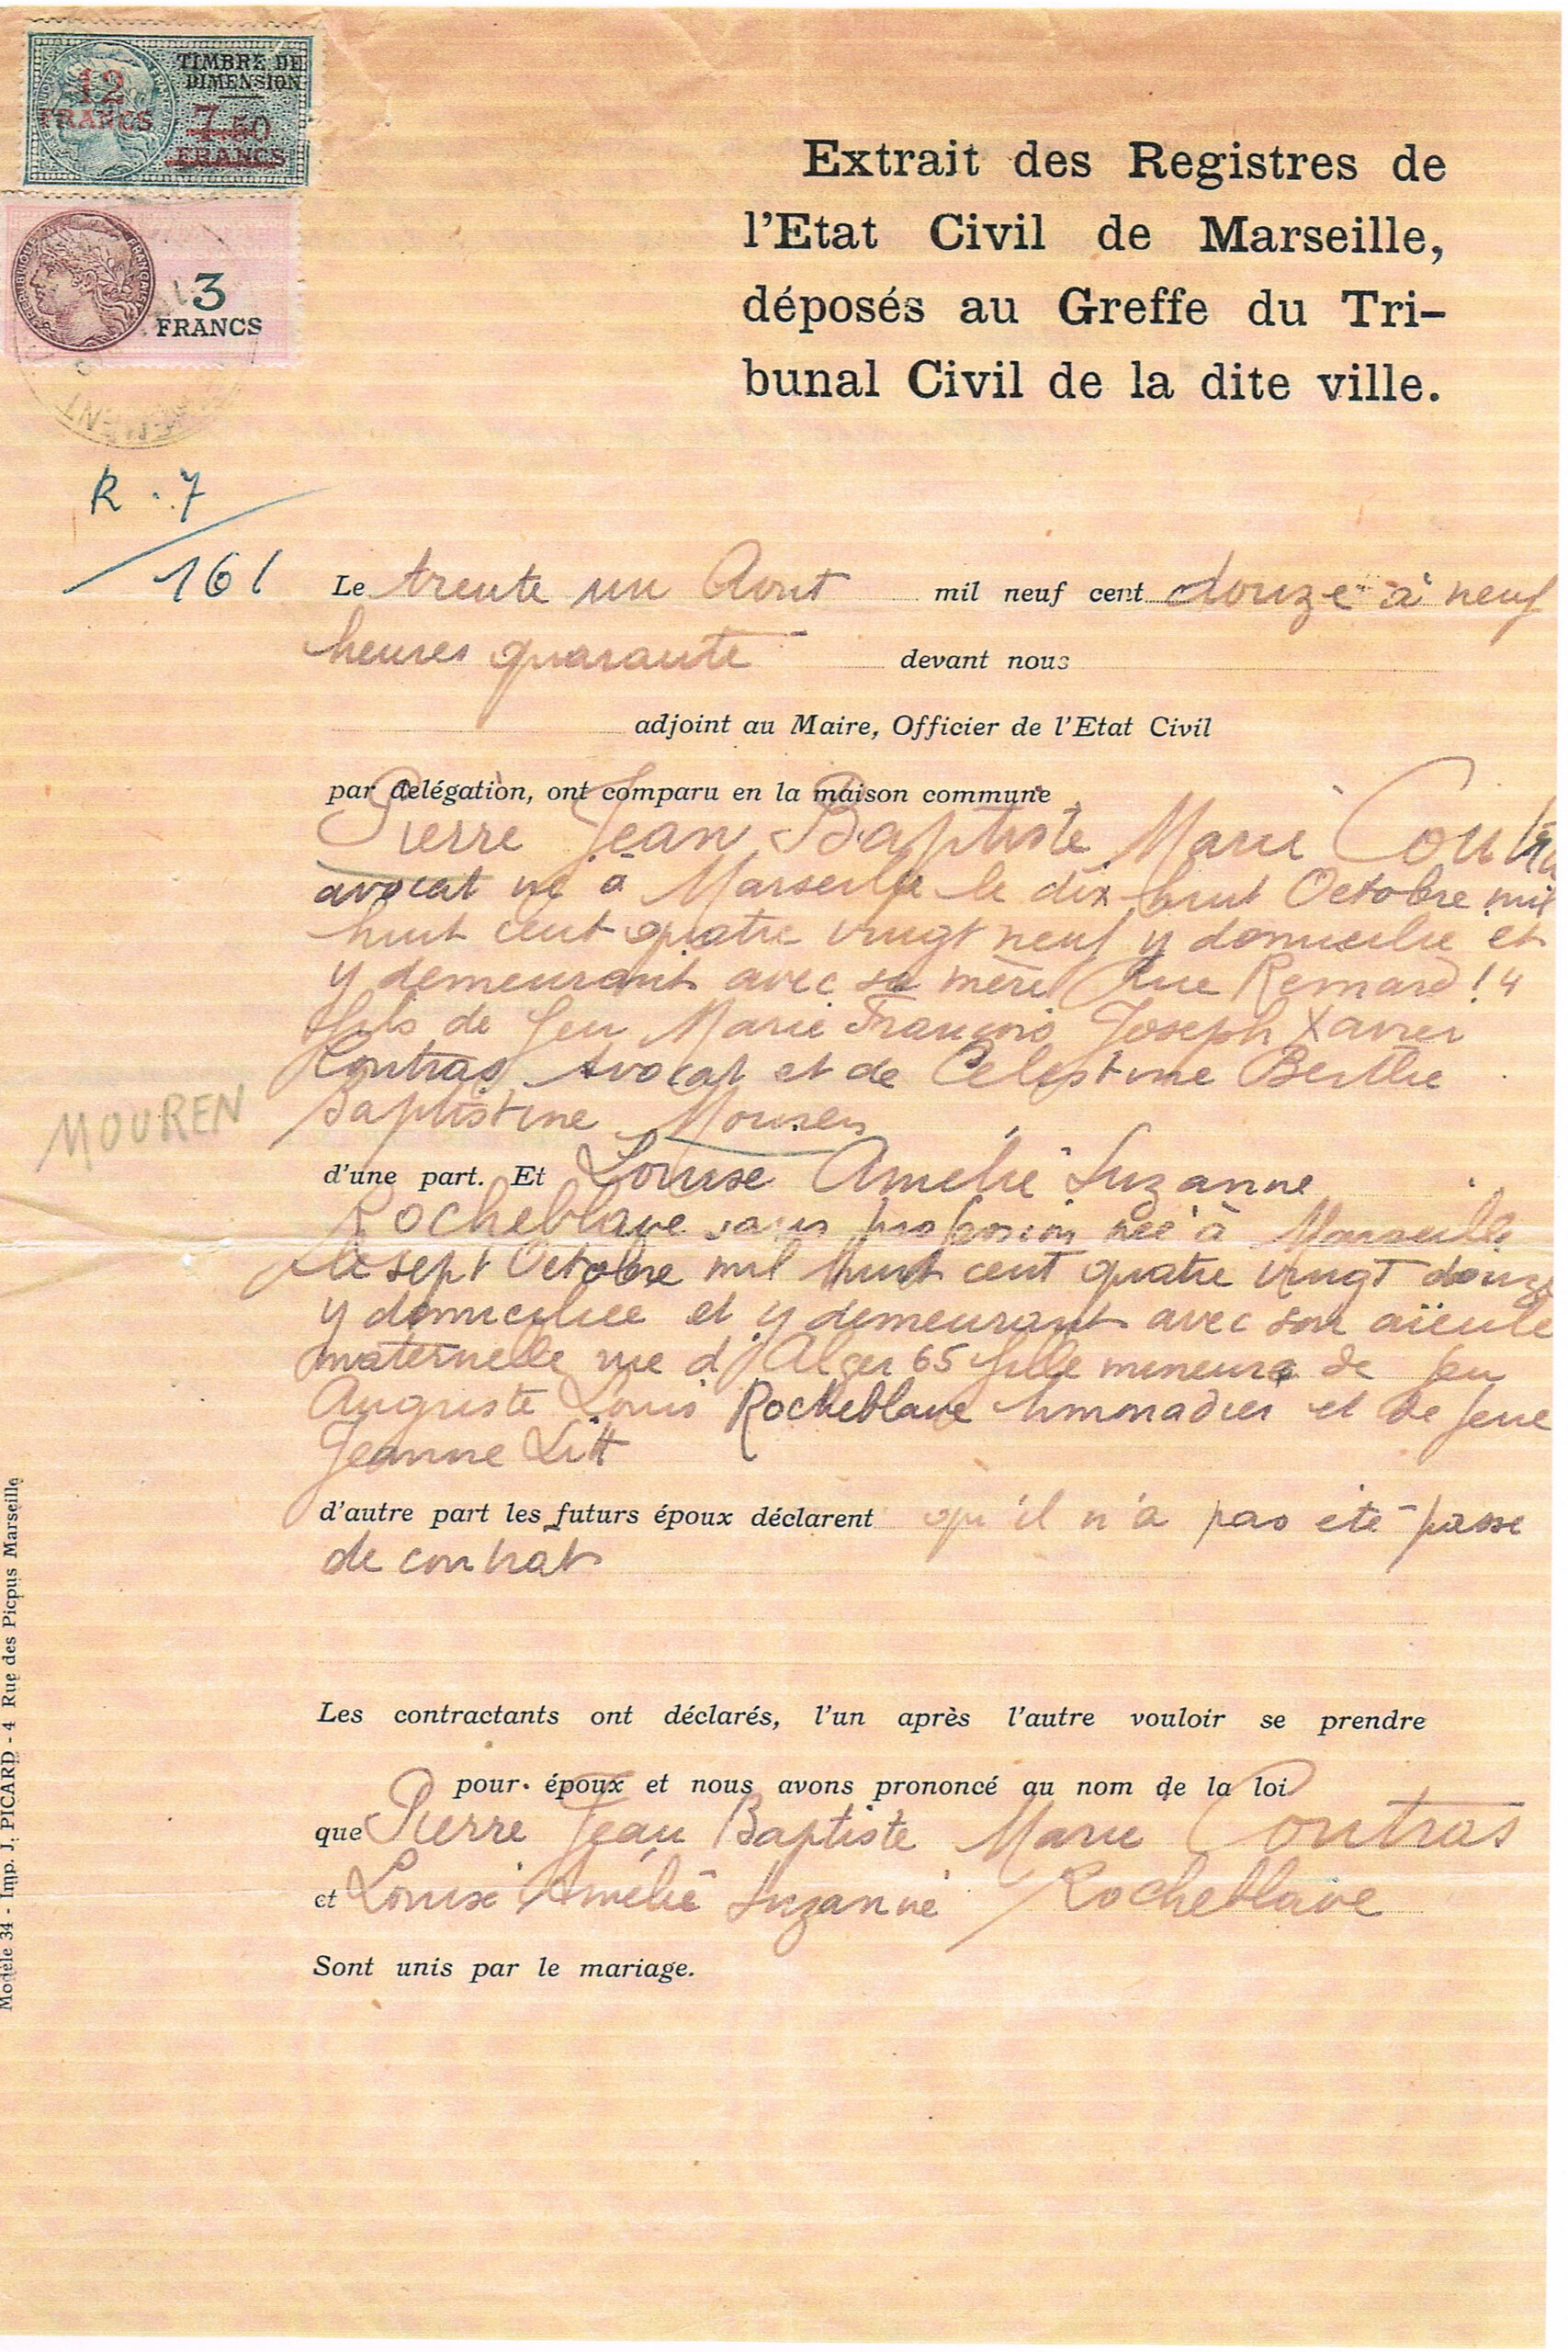 Pierre Extrait d'Acte de mariage du 19 12 1945 recto